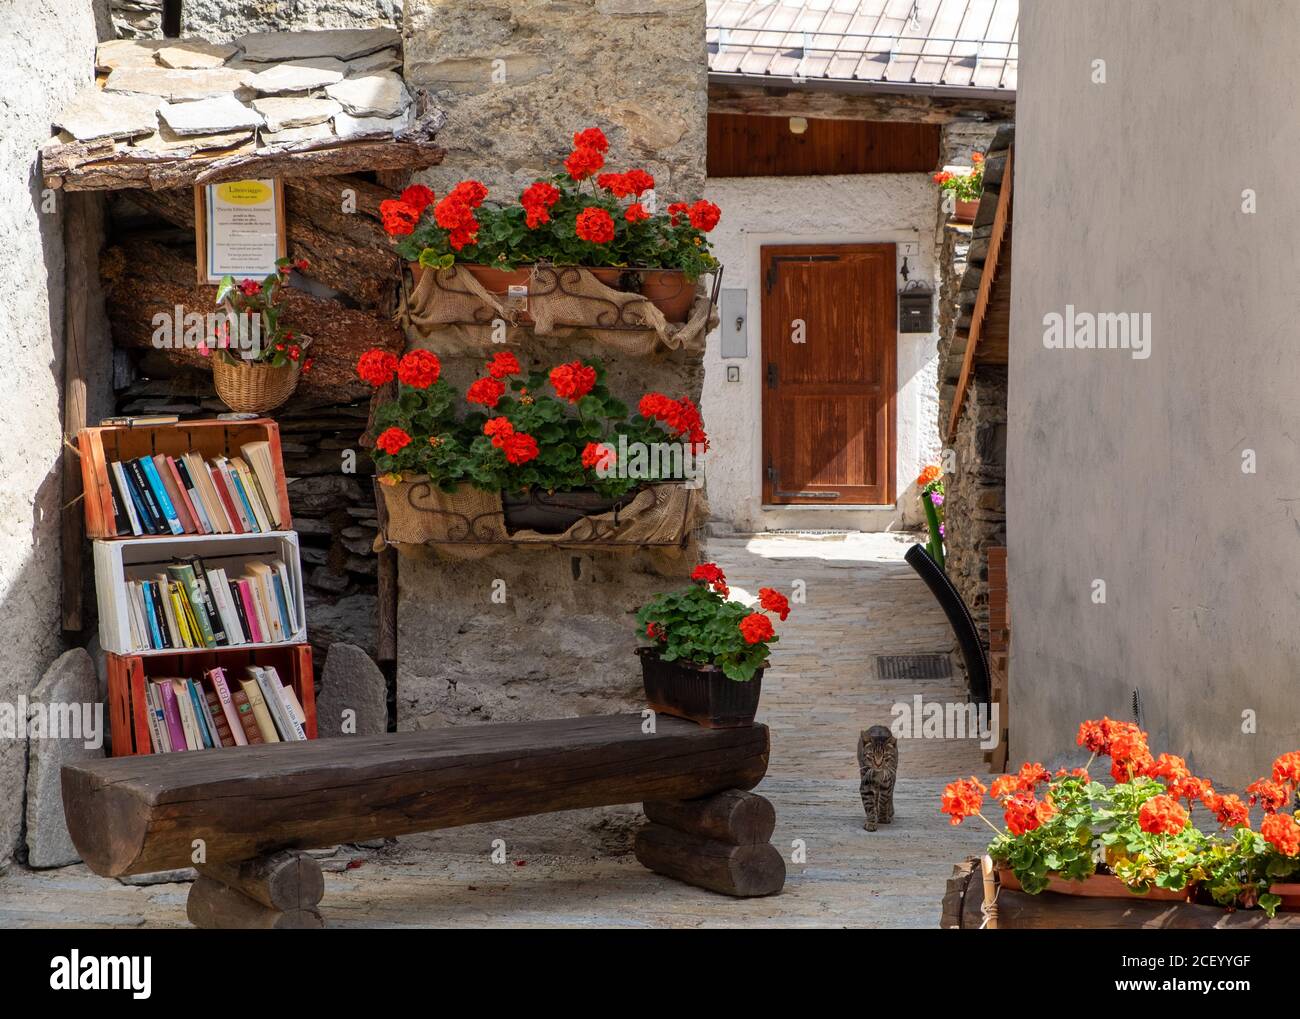 Libre intercambio de libros y plantadores de geranios en el pequeño pueblo de Usseaux, Piemonte, Italia Foto de stock